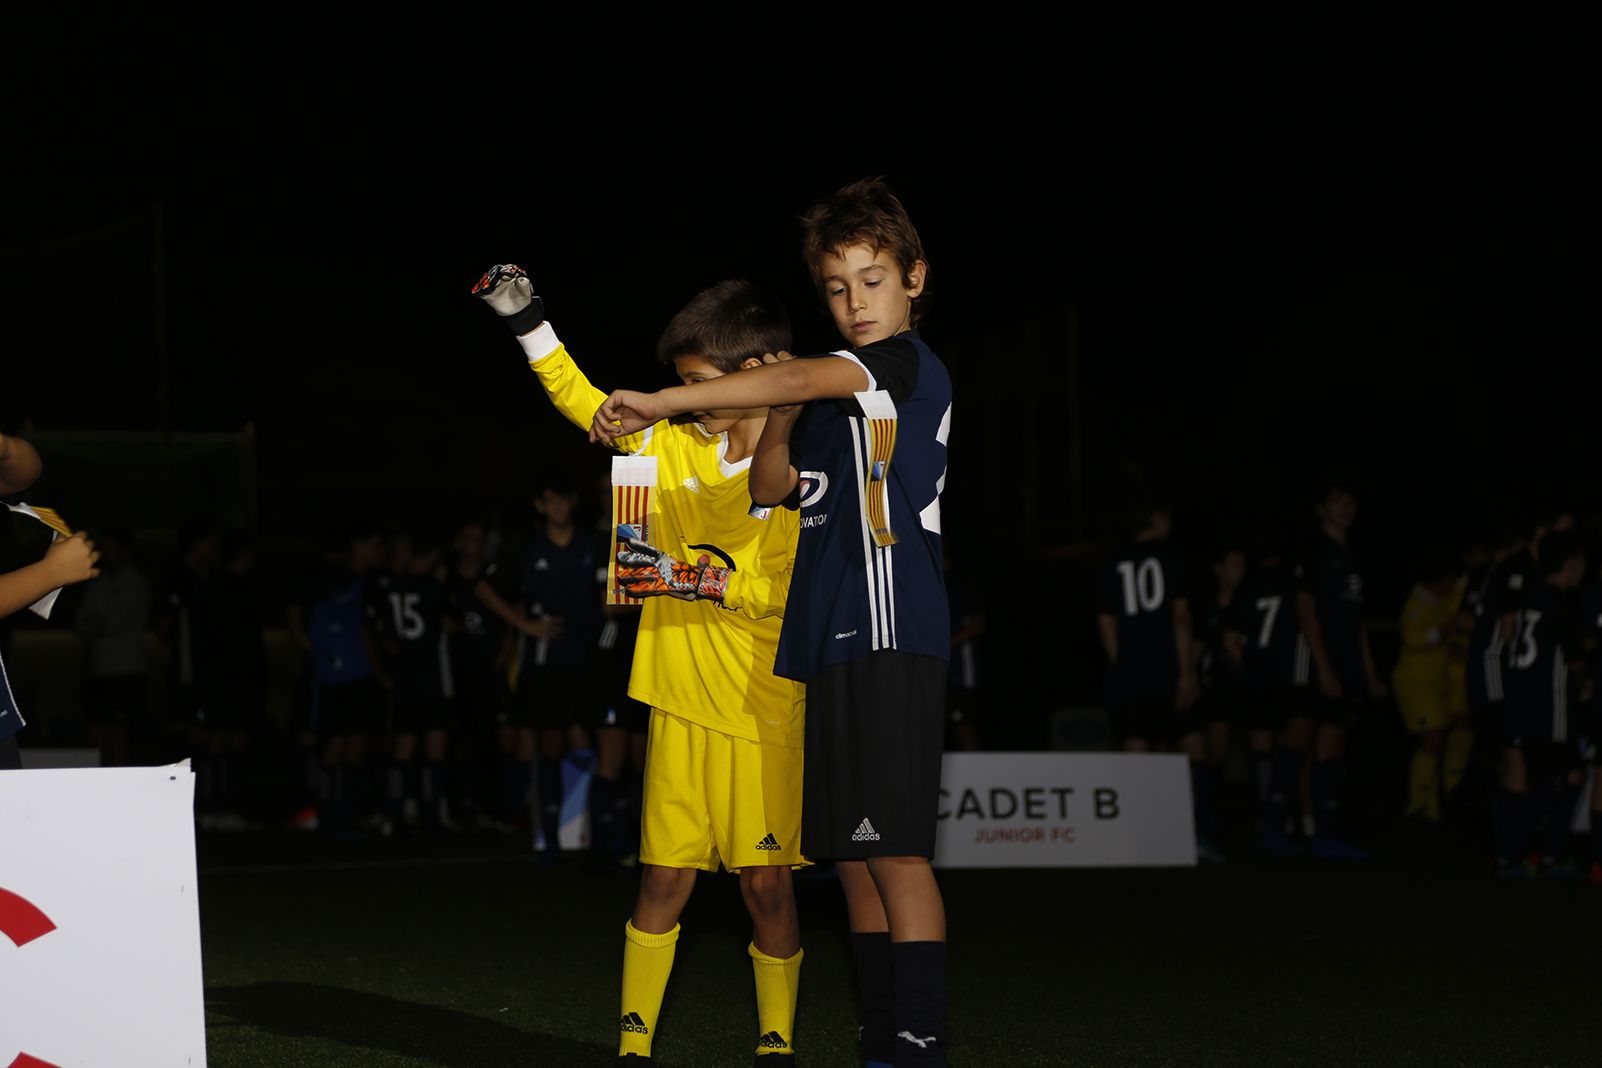 Capitans a la Presentació Futbol Junior FC 2019. FOTO: Anna Bassa